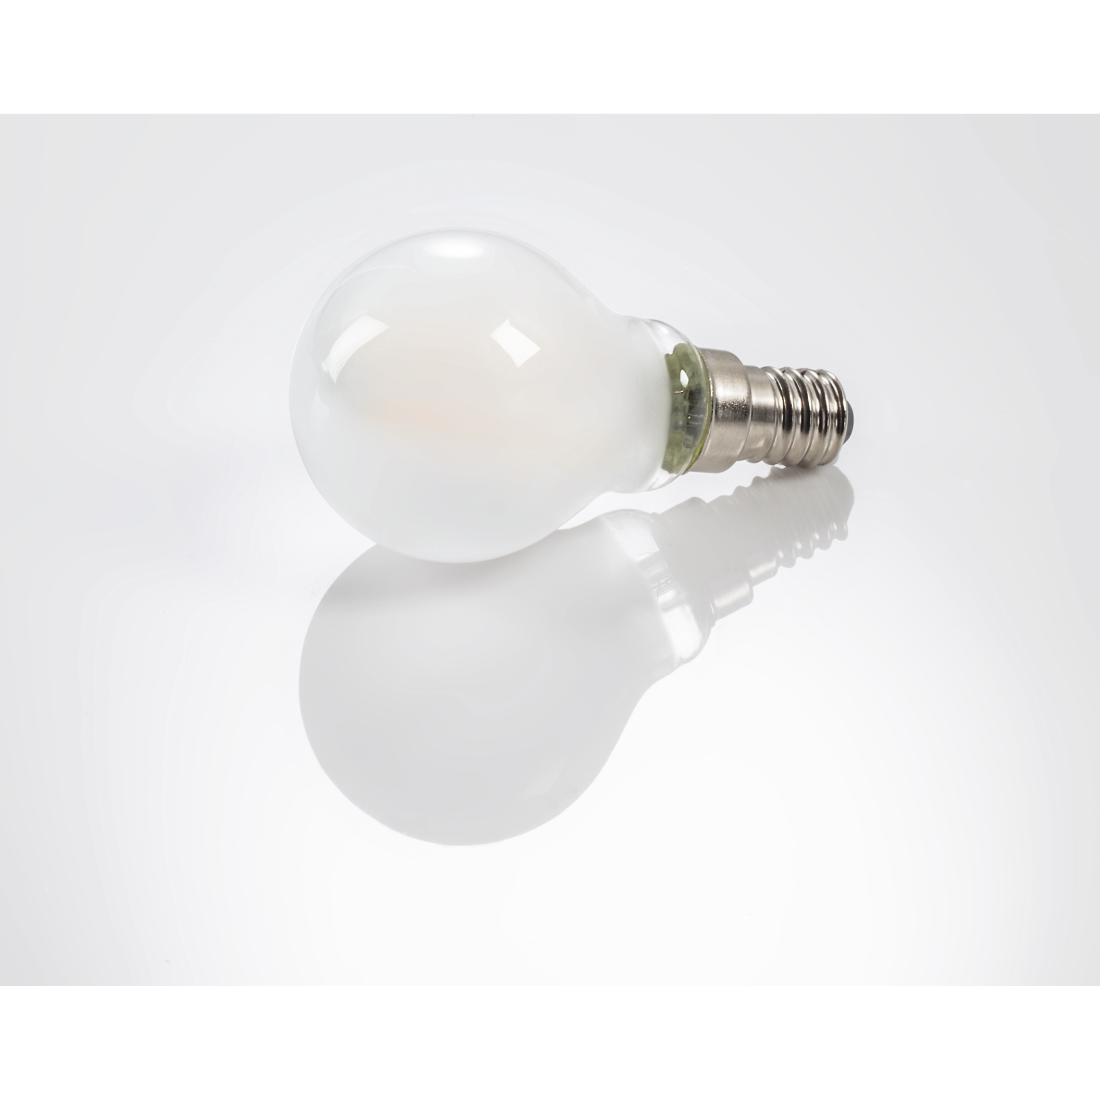 abx3 High-Res Image 3 - Xavax, Ampoule filament à LED, E14, 250lm rempl. 25W, amp. goutte, blc chd